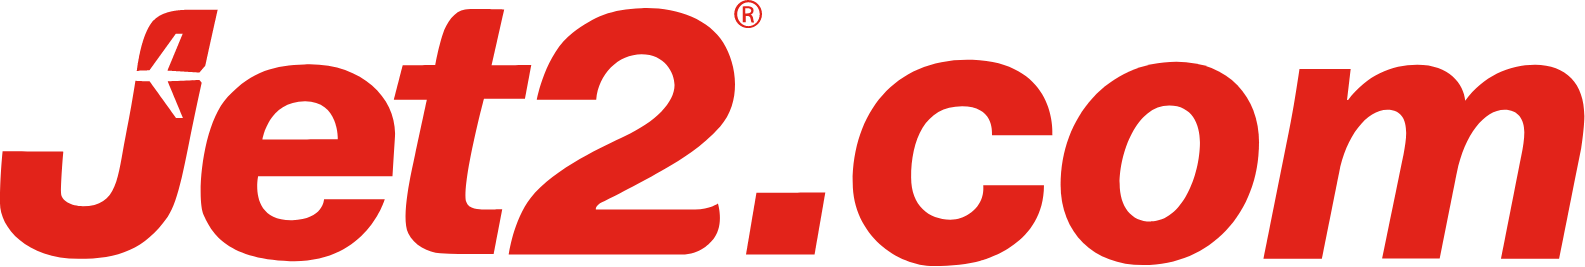 Jet2 logo large (transparent PNG)